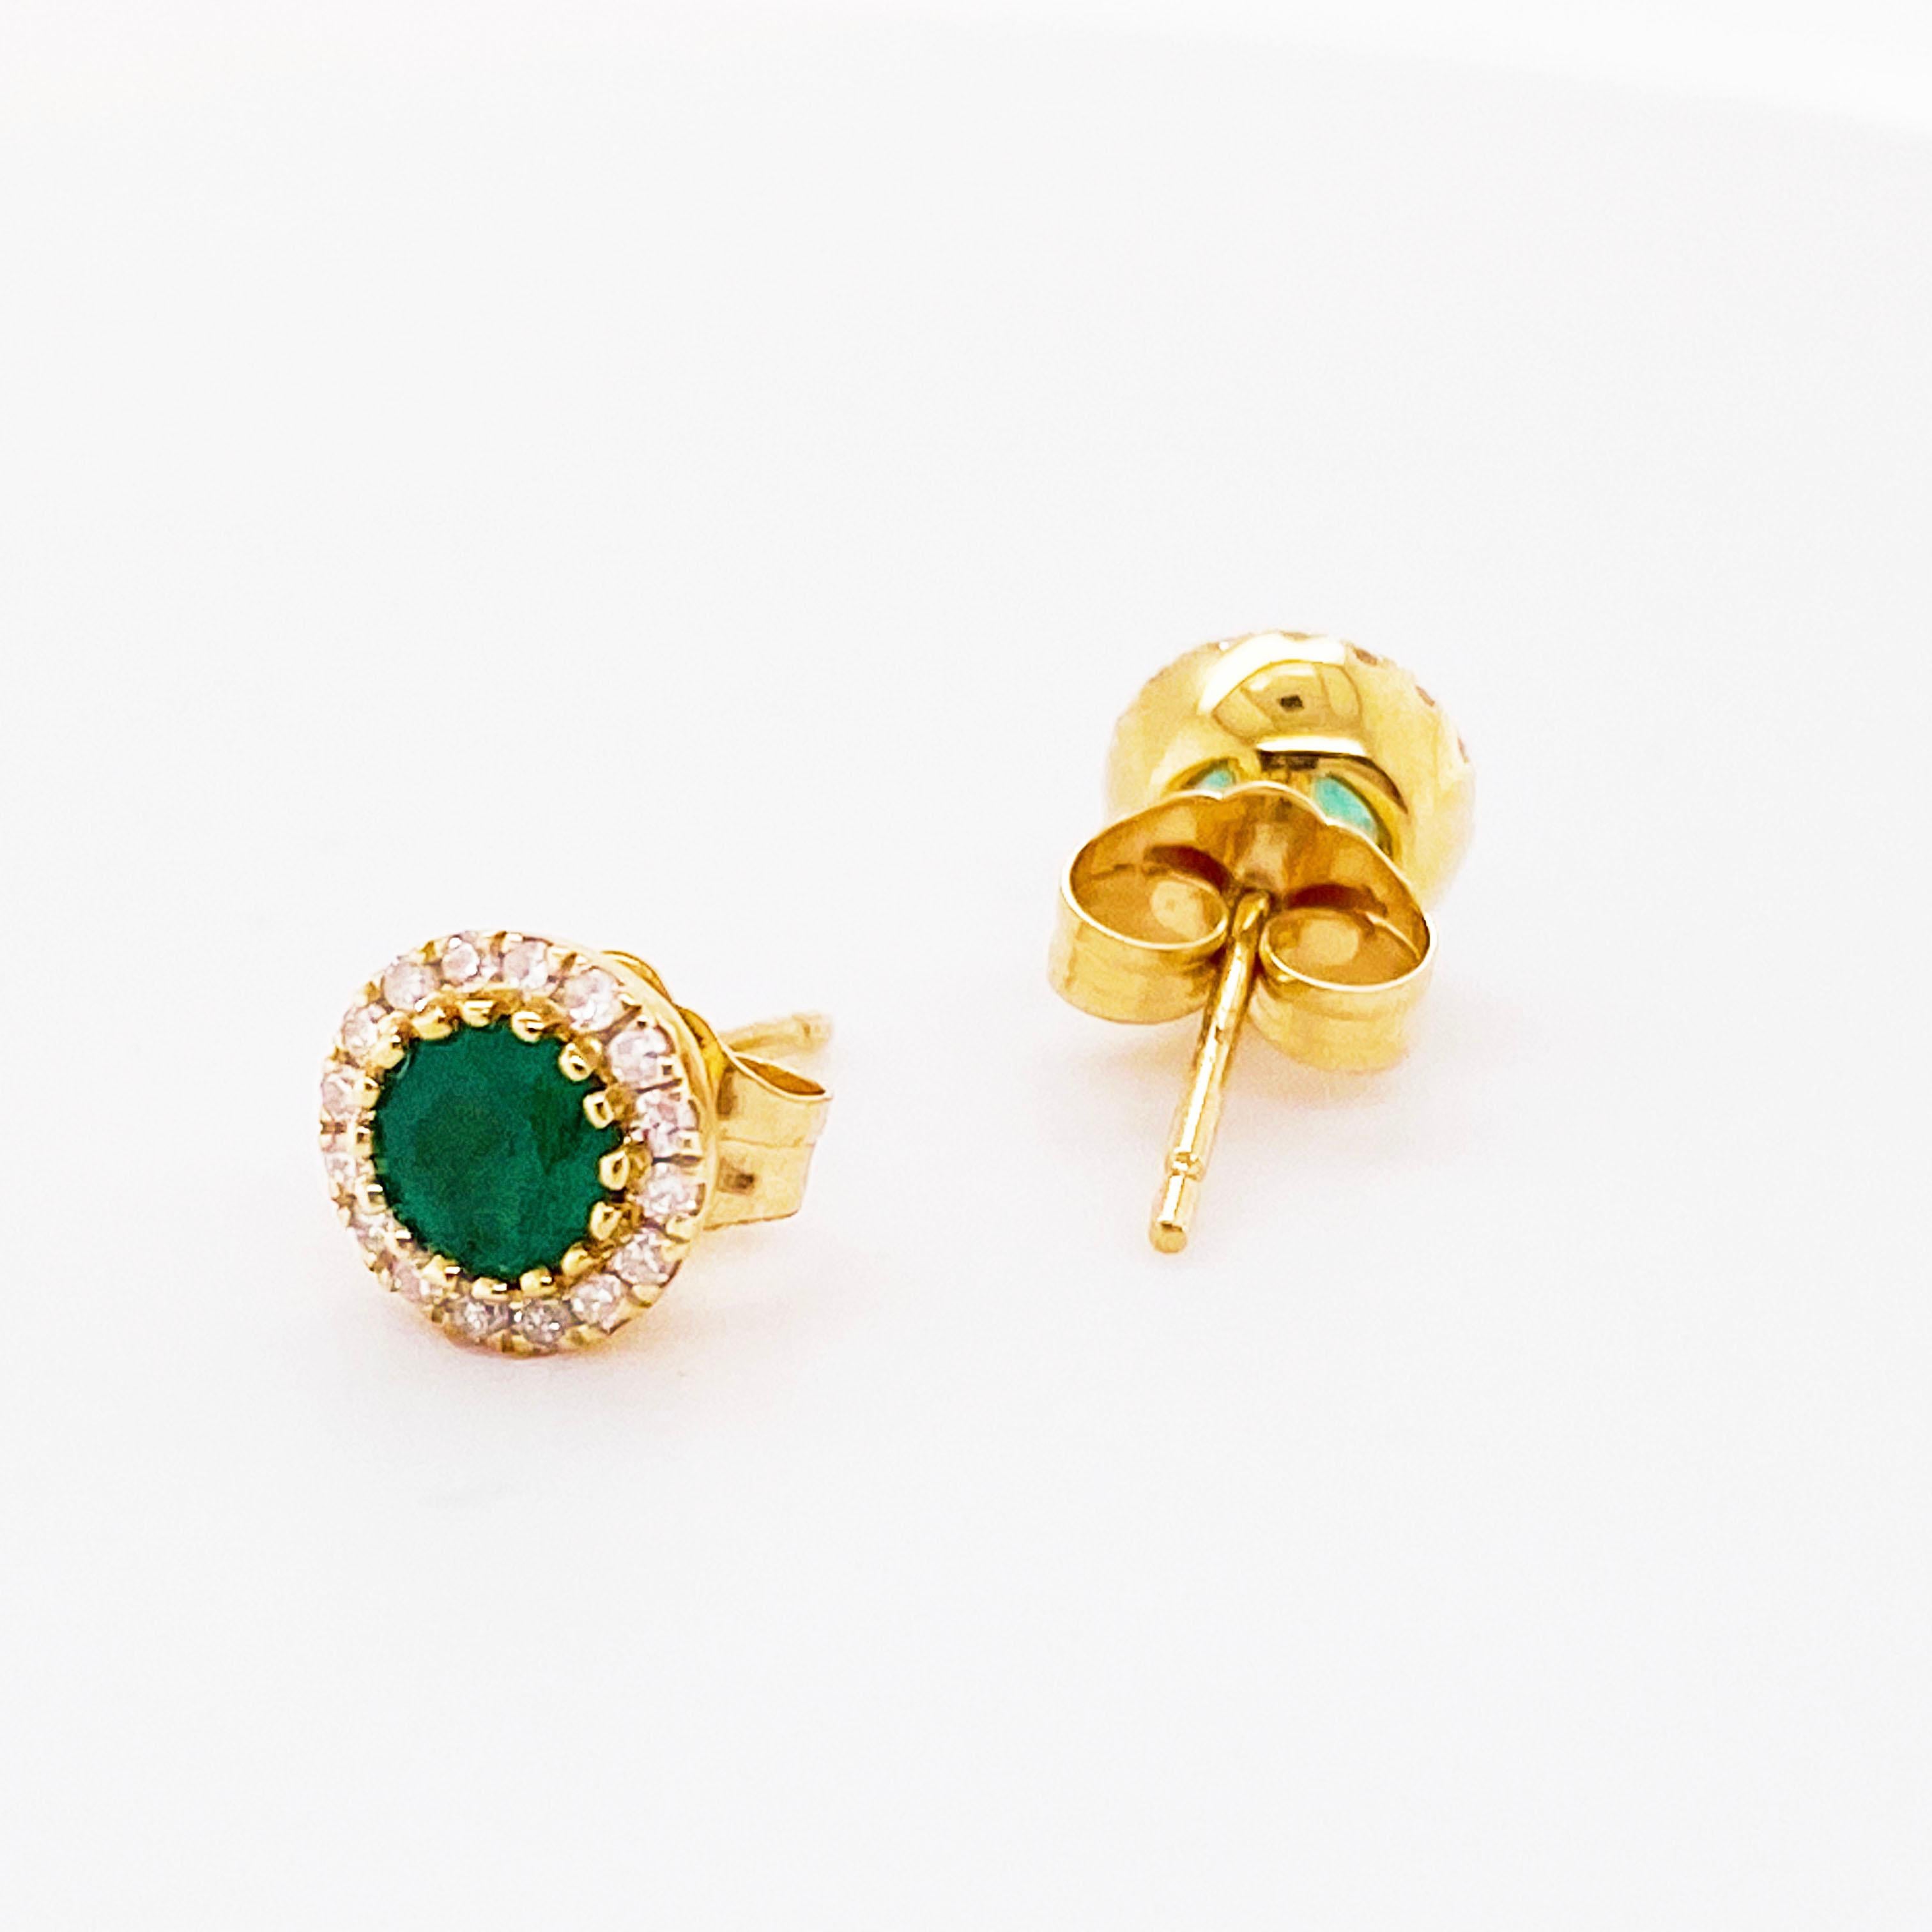 Die Ohrringe aus 14 Karat Gelbgold haben einen schönen 1/4 Karat  grüner Smaragd in jedem Ohrring und umgeben von 16 Diamanten in jedem Ohrring. Insgesamt gibt es 32 Diamanten mit einer Reinheit von VS2-SI1 und einer Farbe von G-H und insgesamt 2